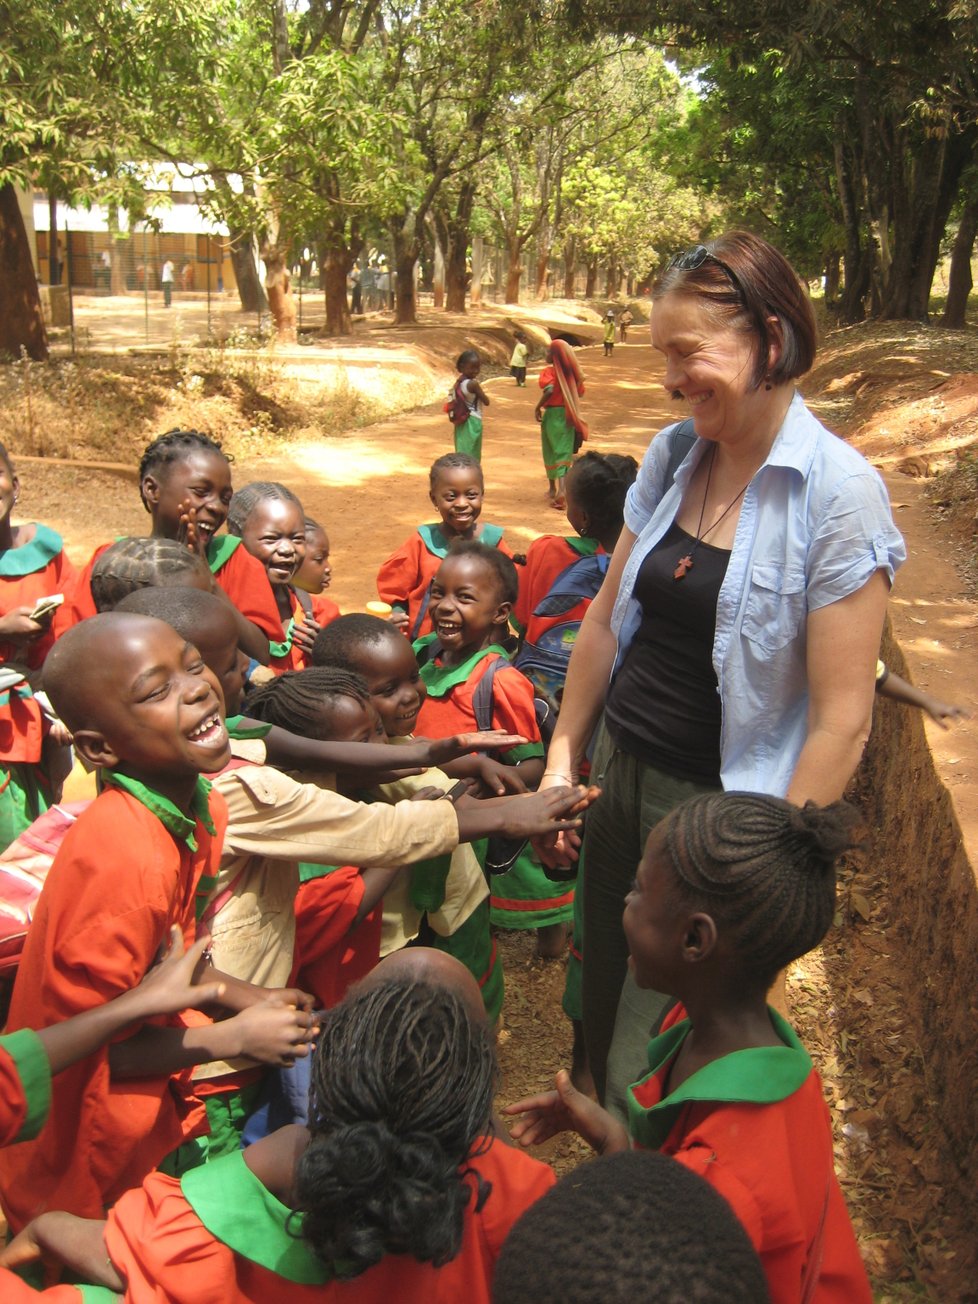 Paní Ludmila zasvětila svůj život pomoci lidem ve Středoafrické republice.